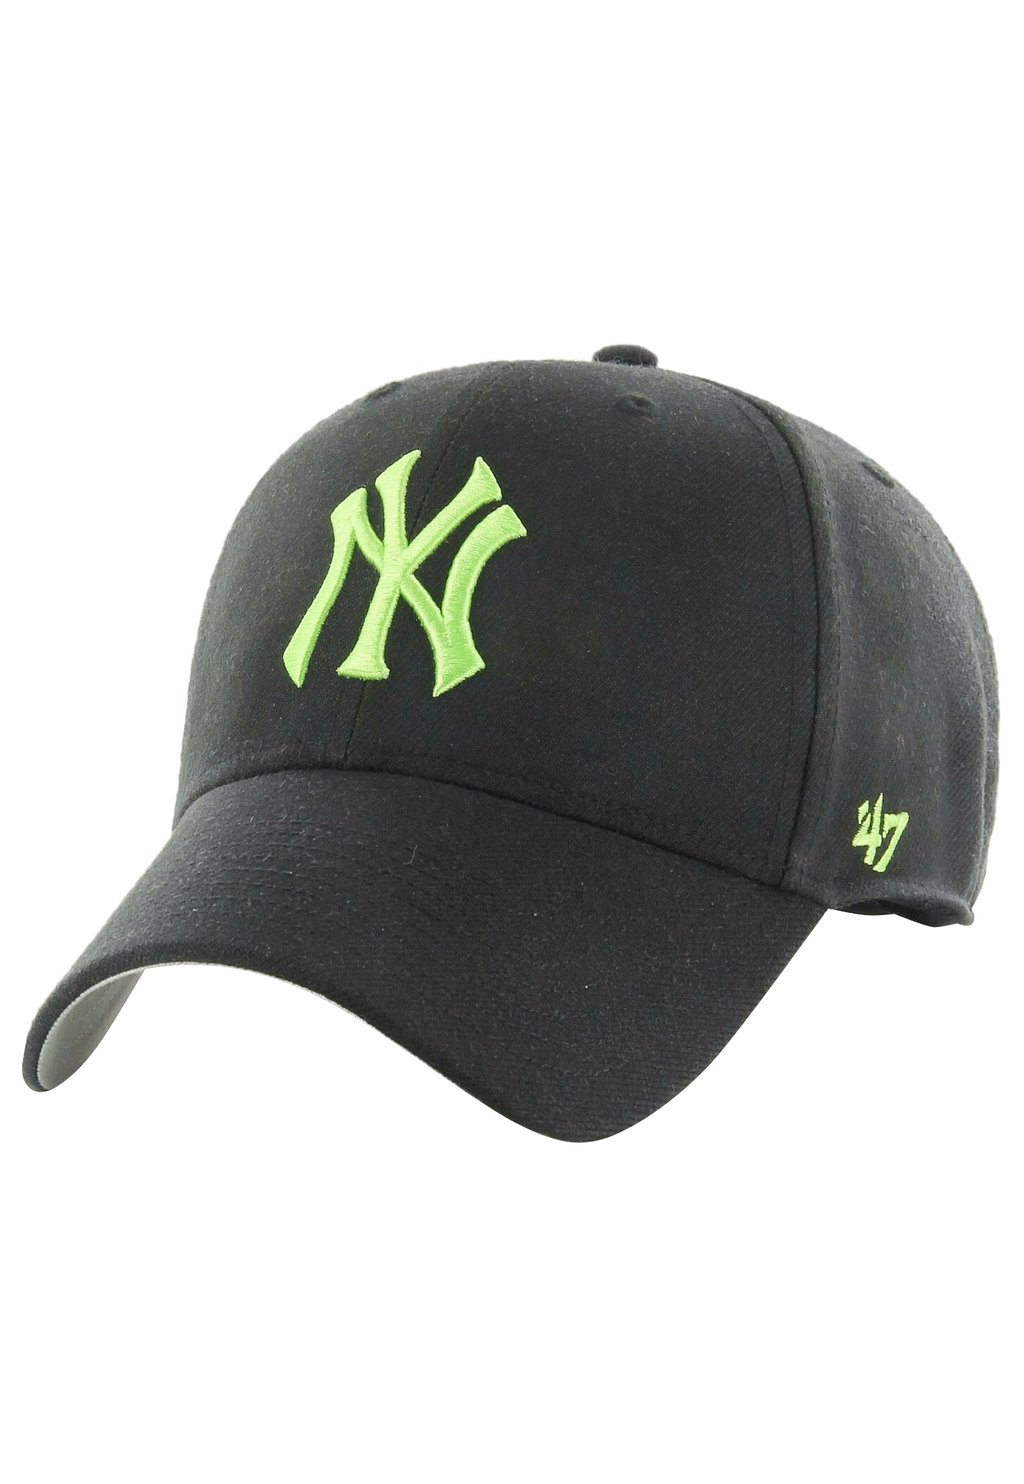 Бейсболка MLB NEW YORK YANKEES LIME '47, цвет black